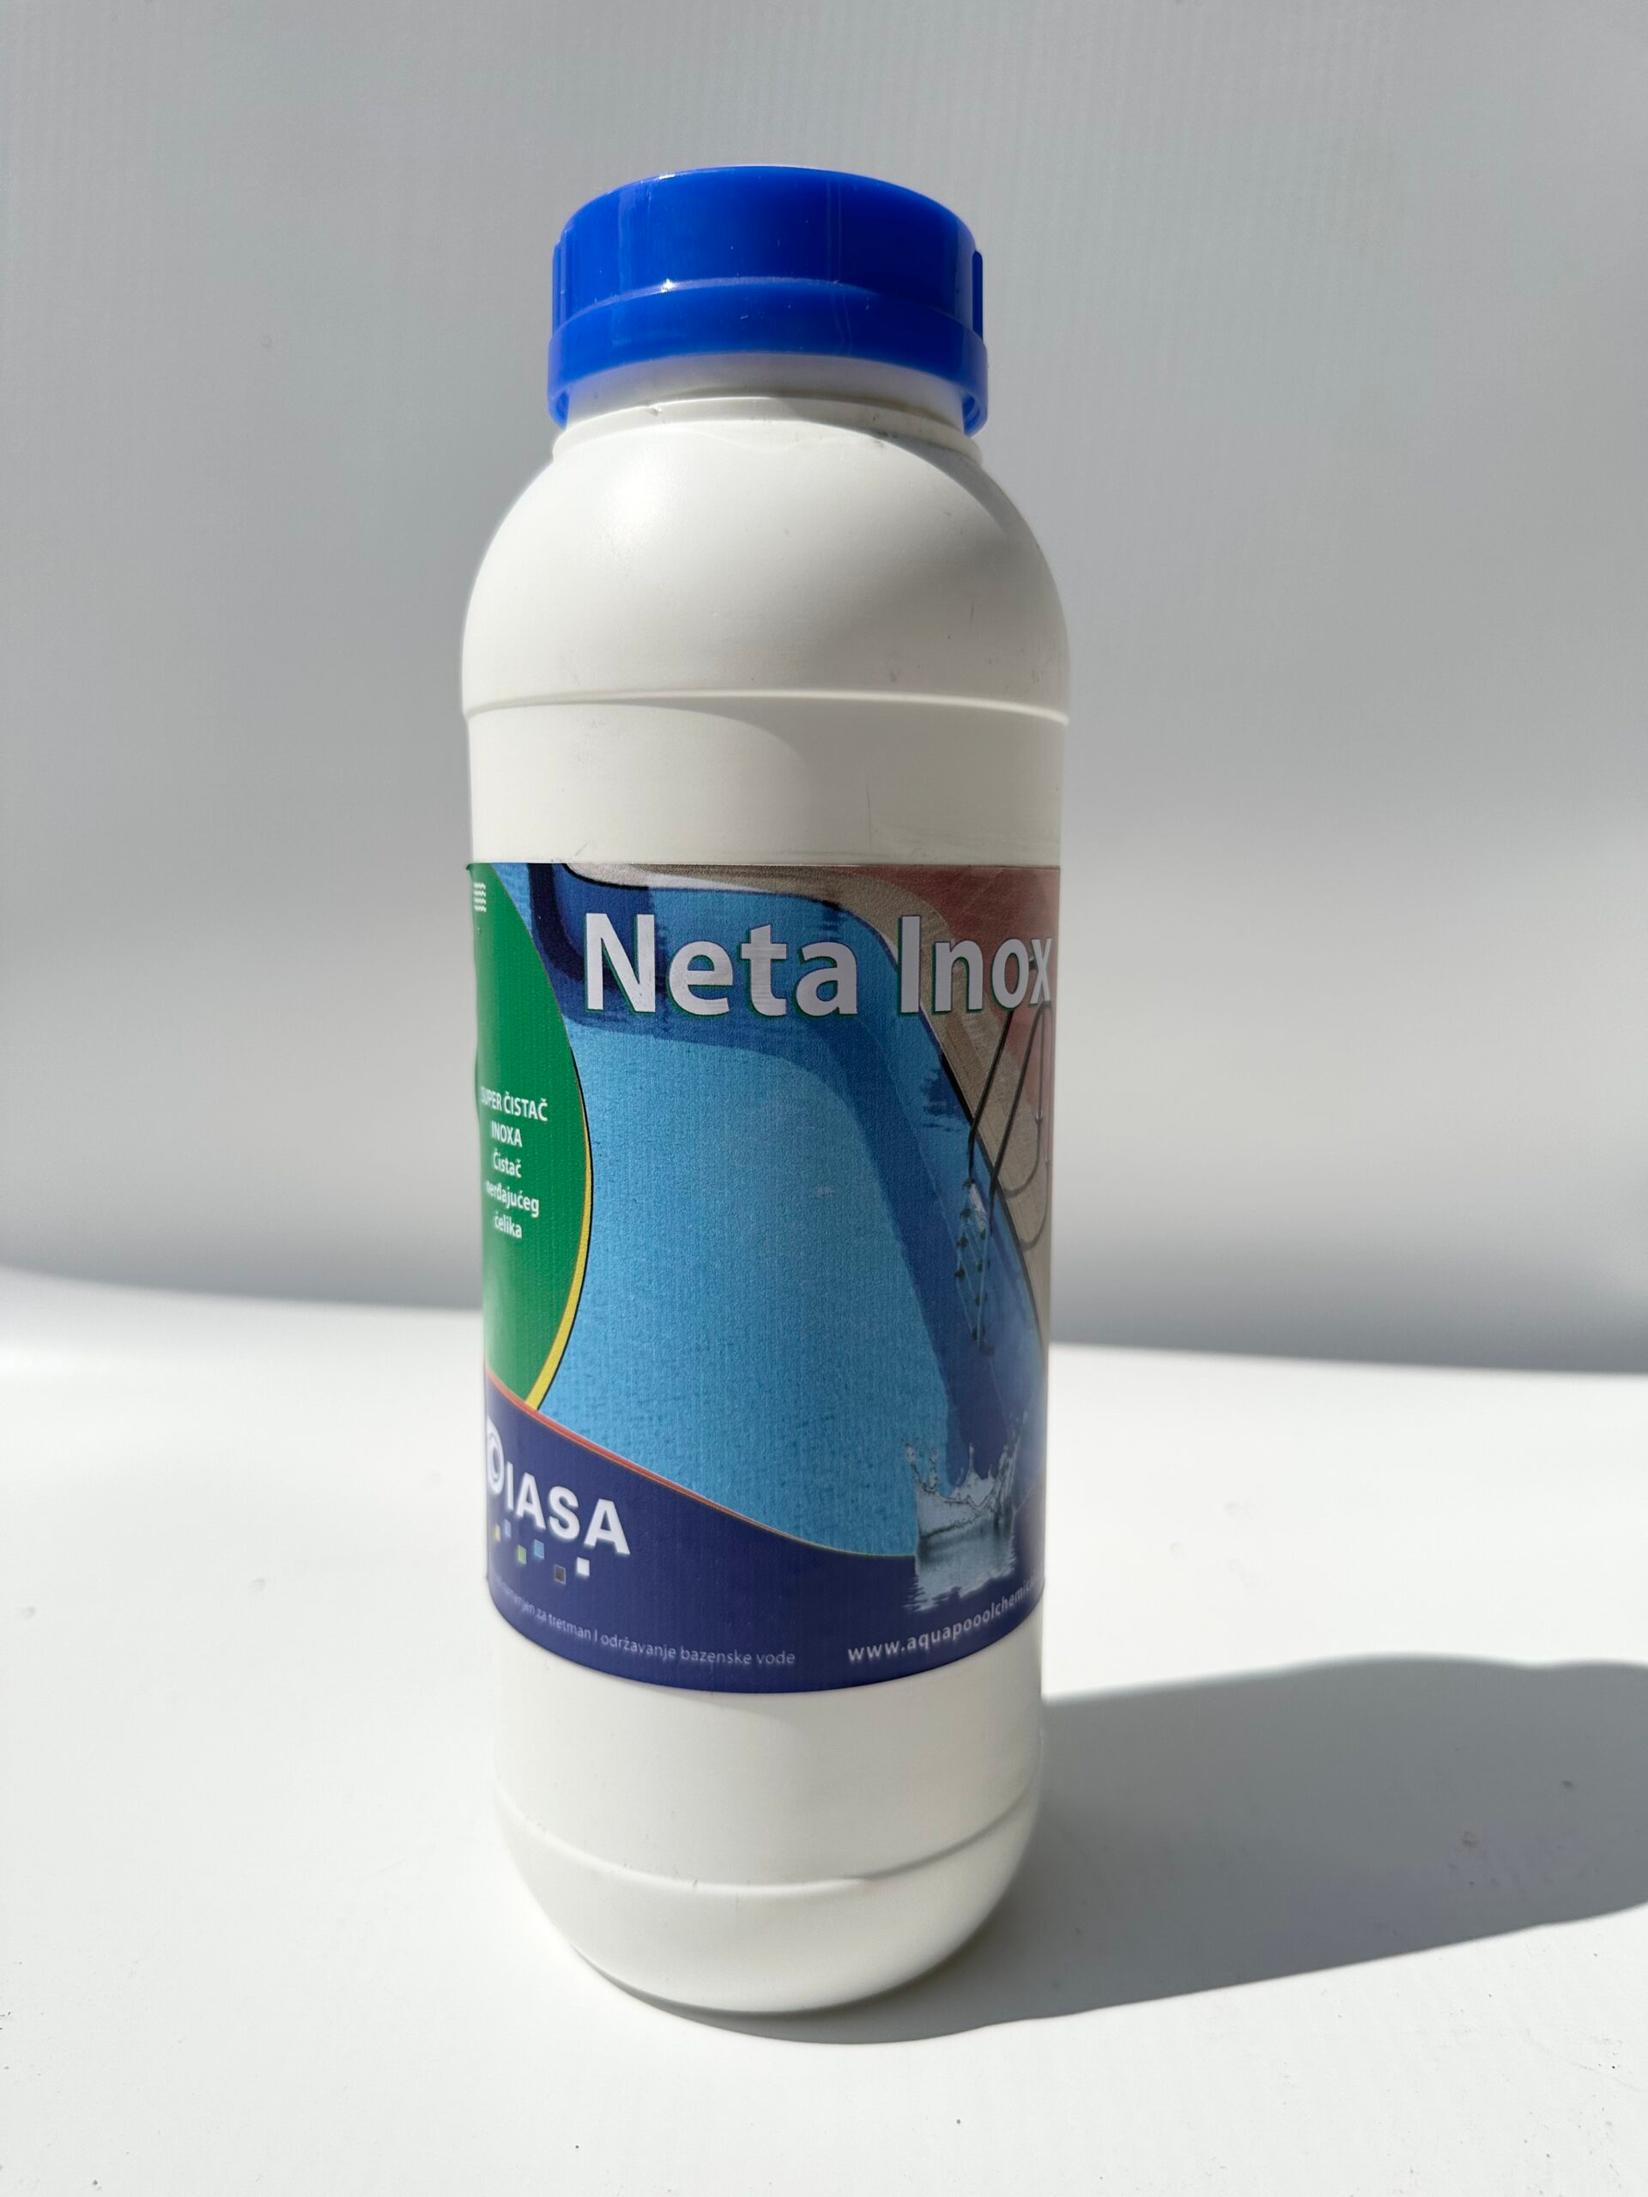 Selected image for DIASA Neta Inox Sredstvo za čišćenje inox površina, 1l